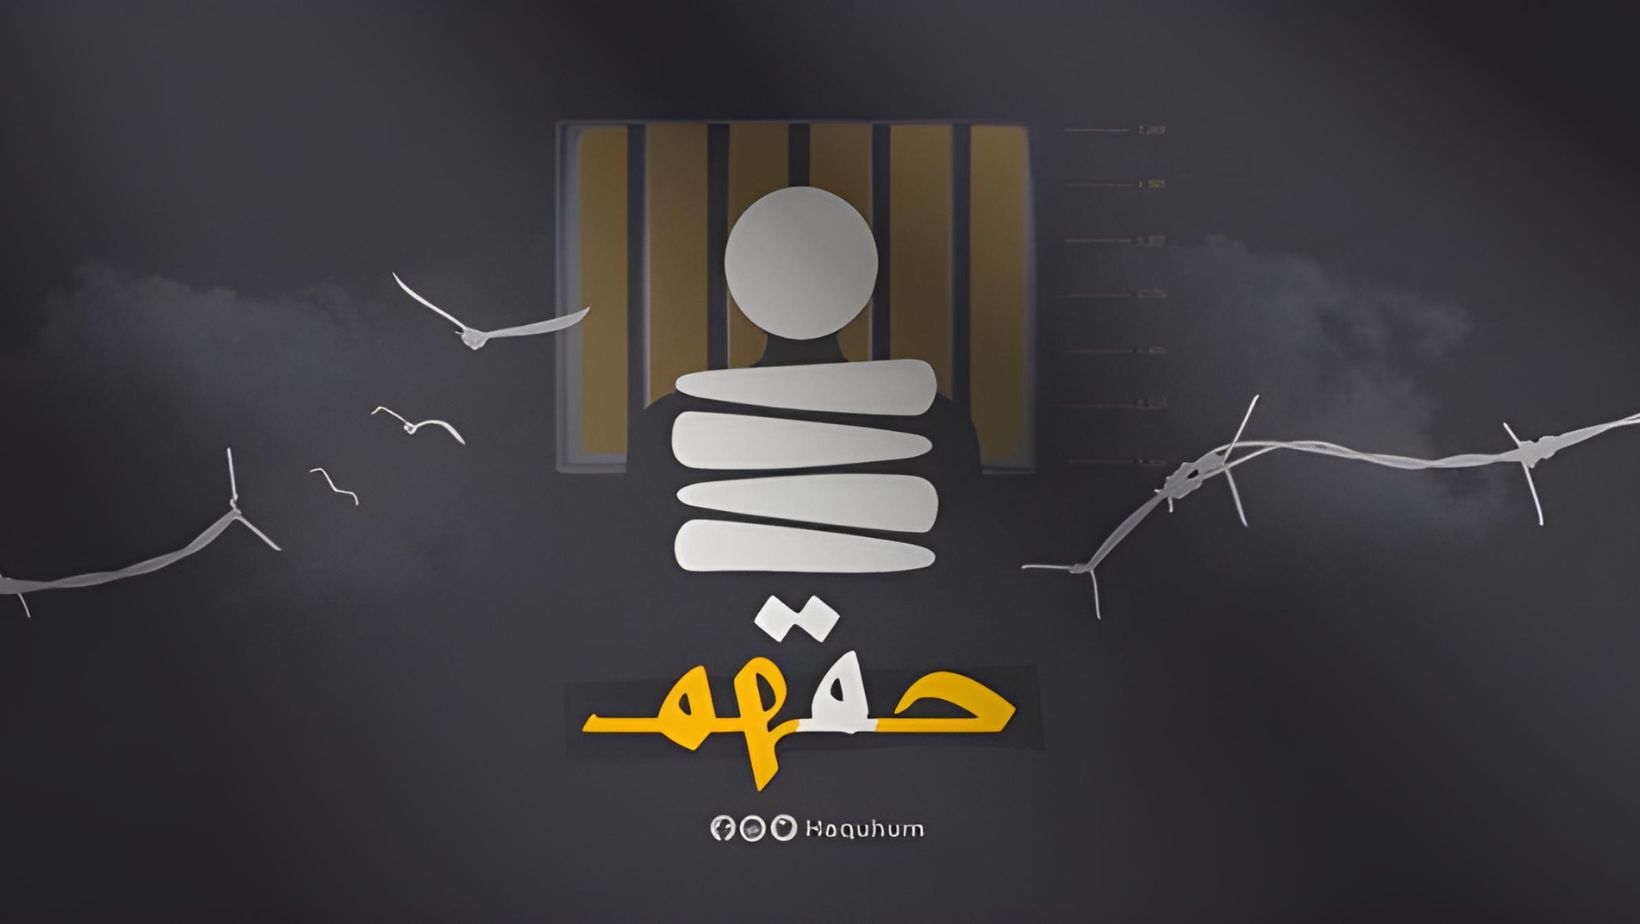 منصة "حقّهم" الحقوقية تتوقف عن العمل، معتذرة لأسر السجناء السياسيين في مصر.